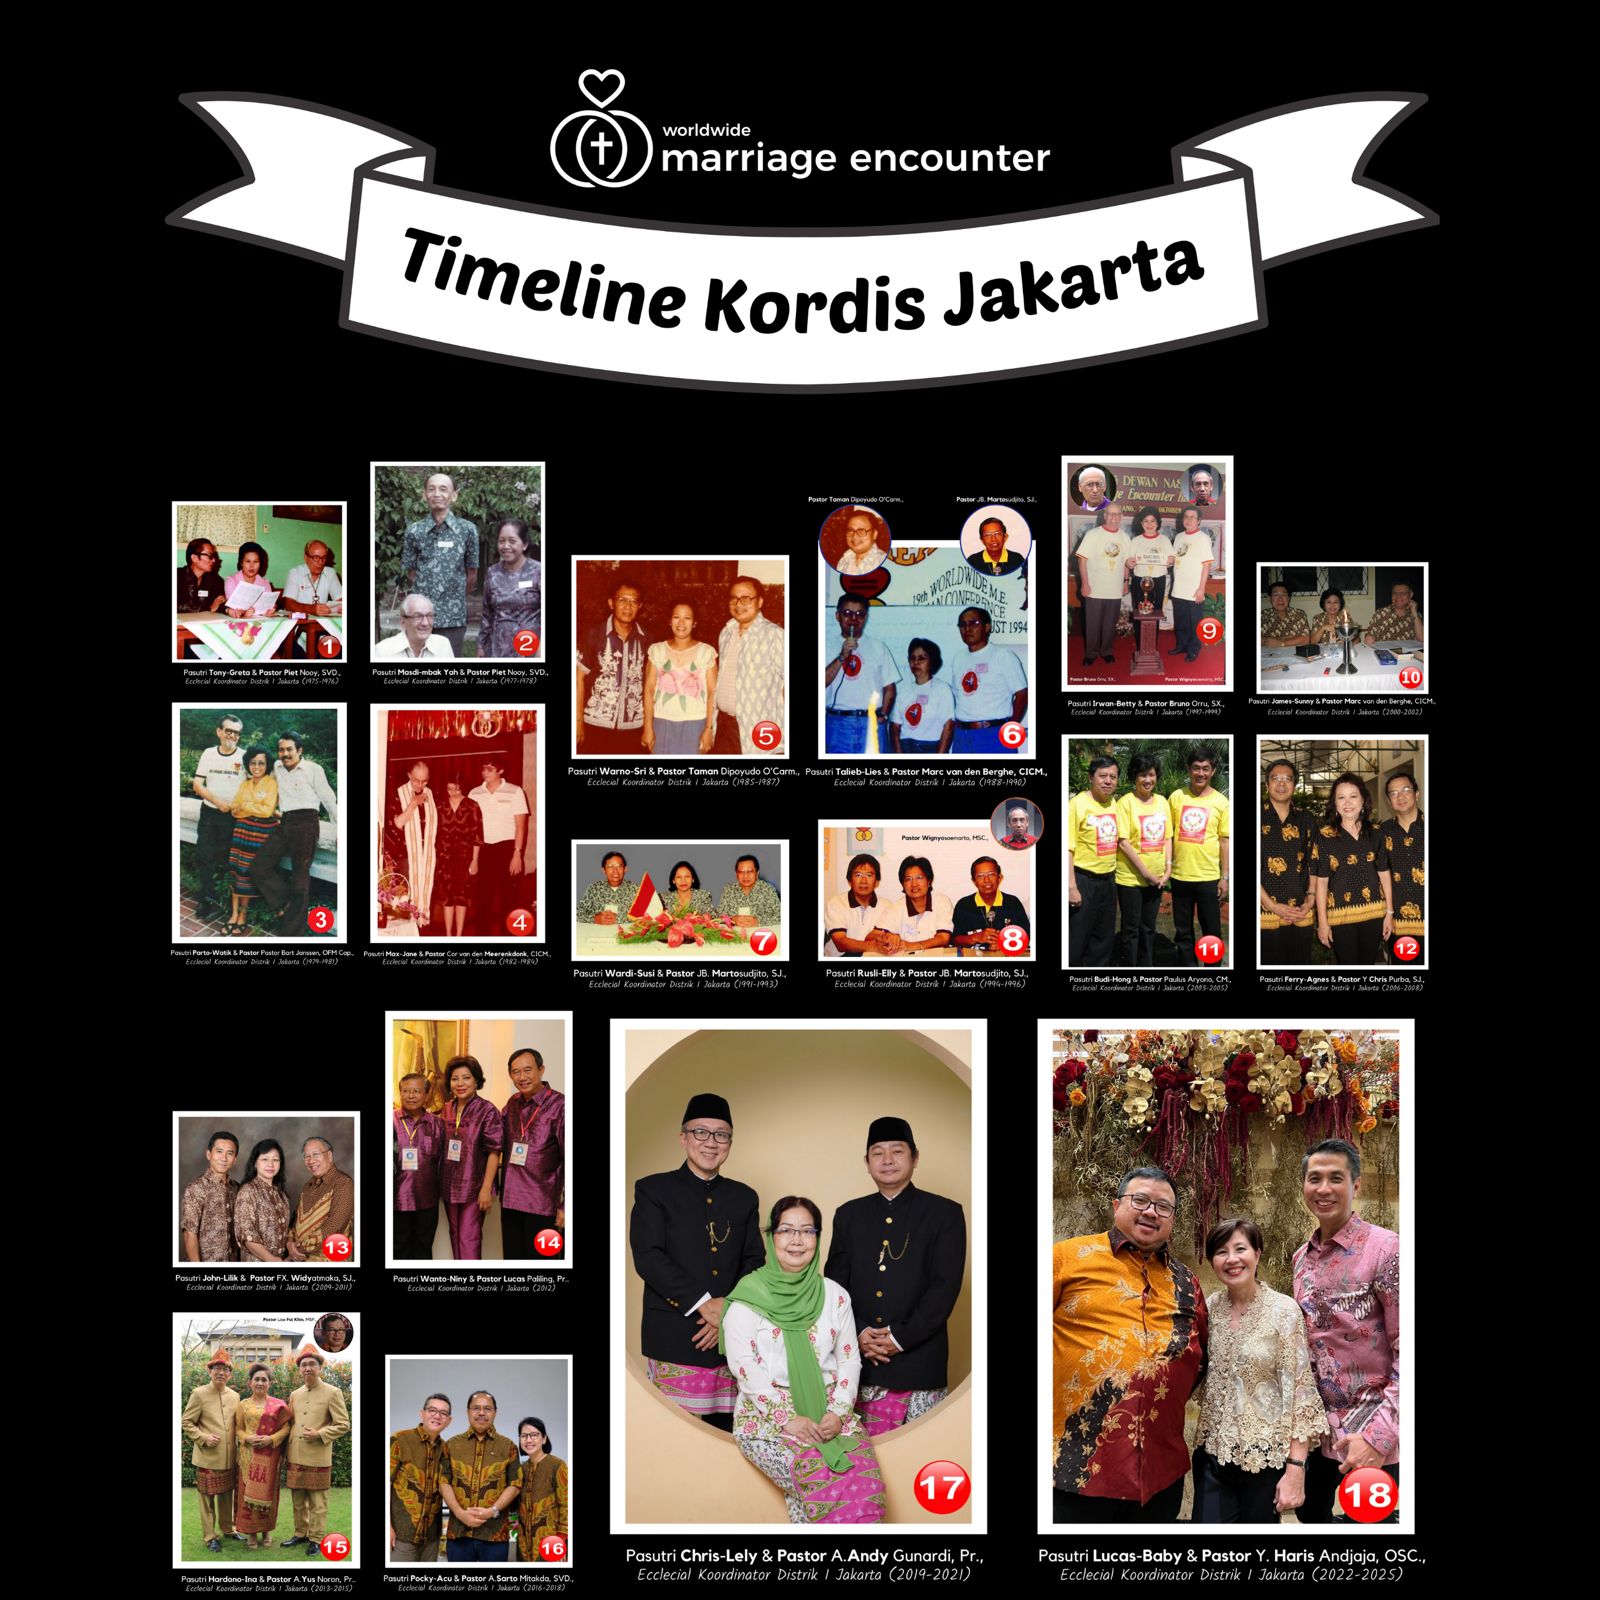 Timeline Kordis Jakarta